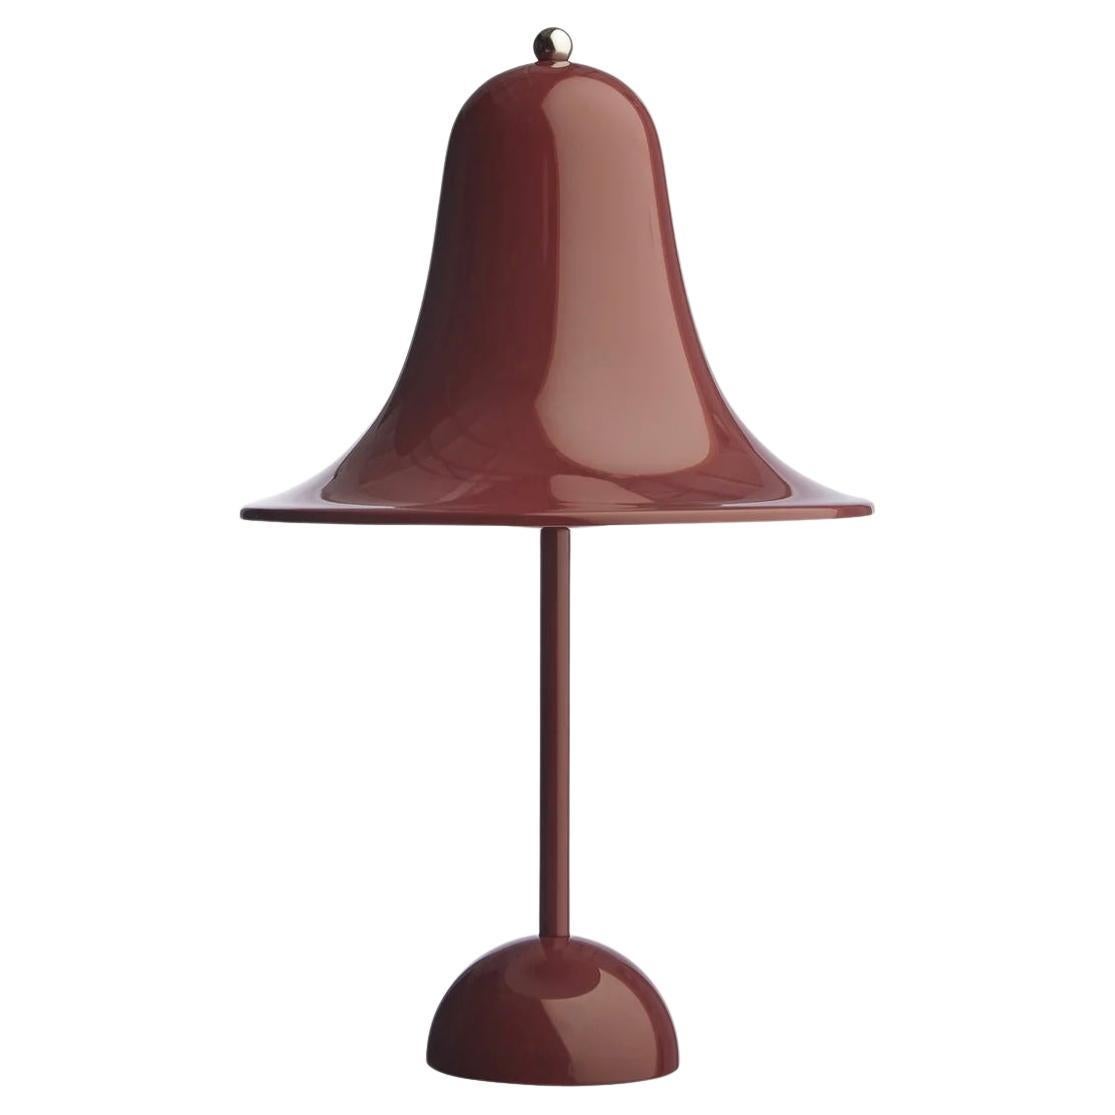 Verner Panton 'Pantop' Table Lamp in 'Burgundy' 1980 for Verpan